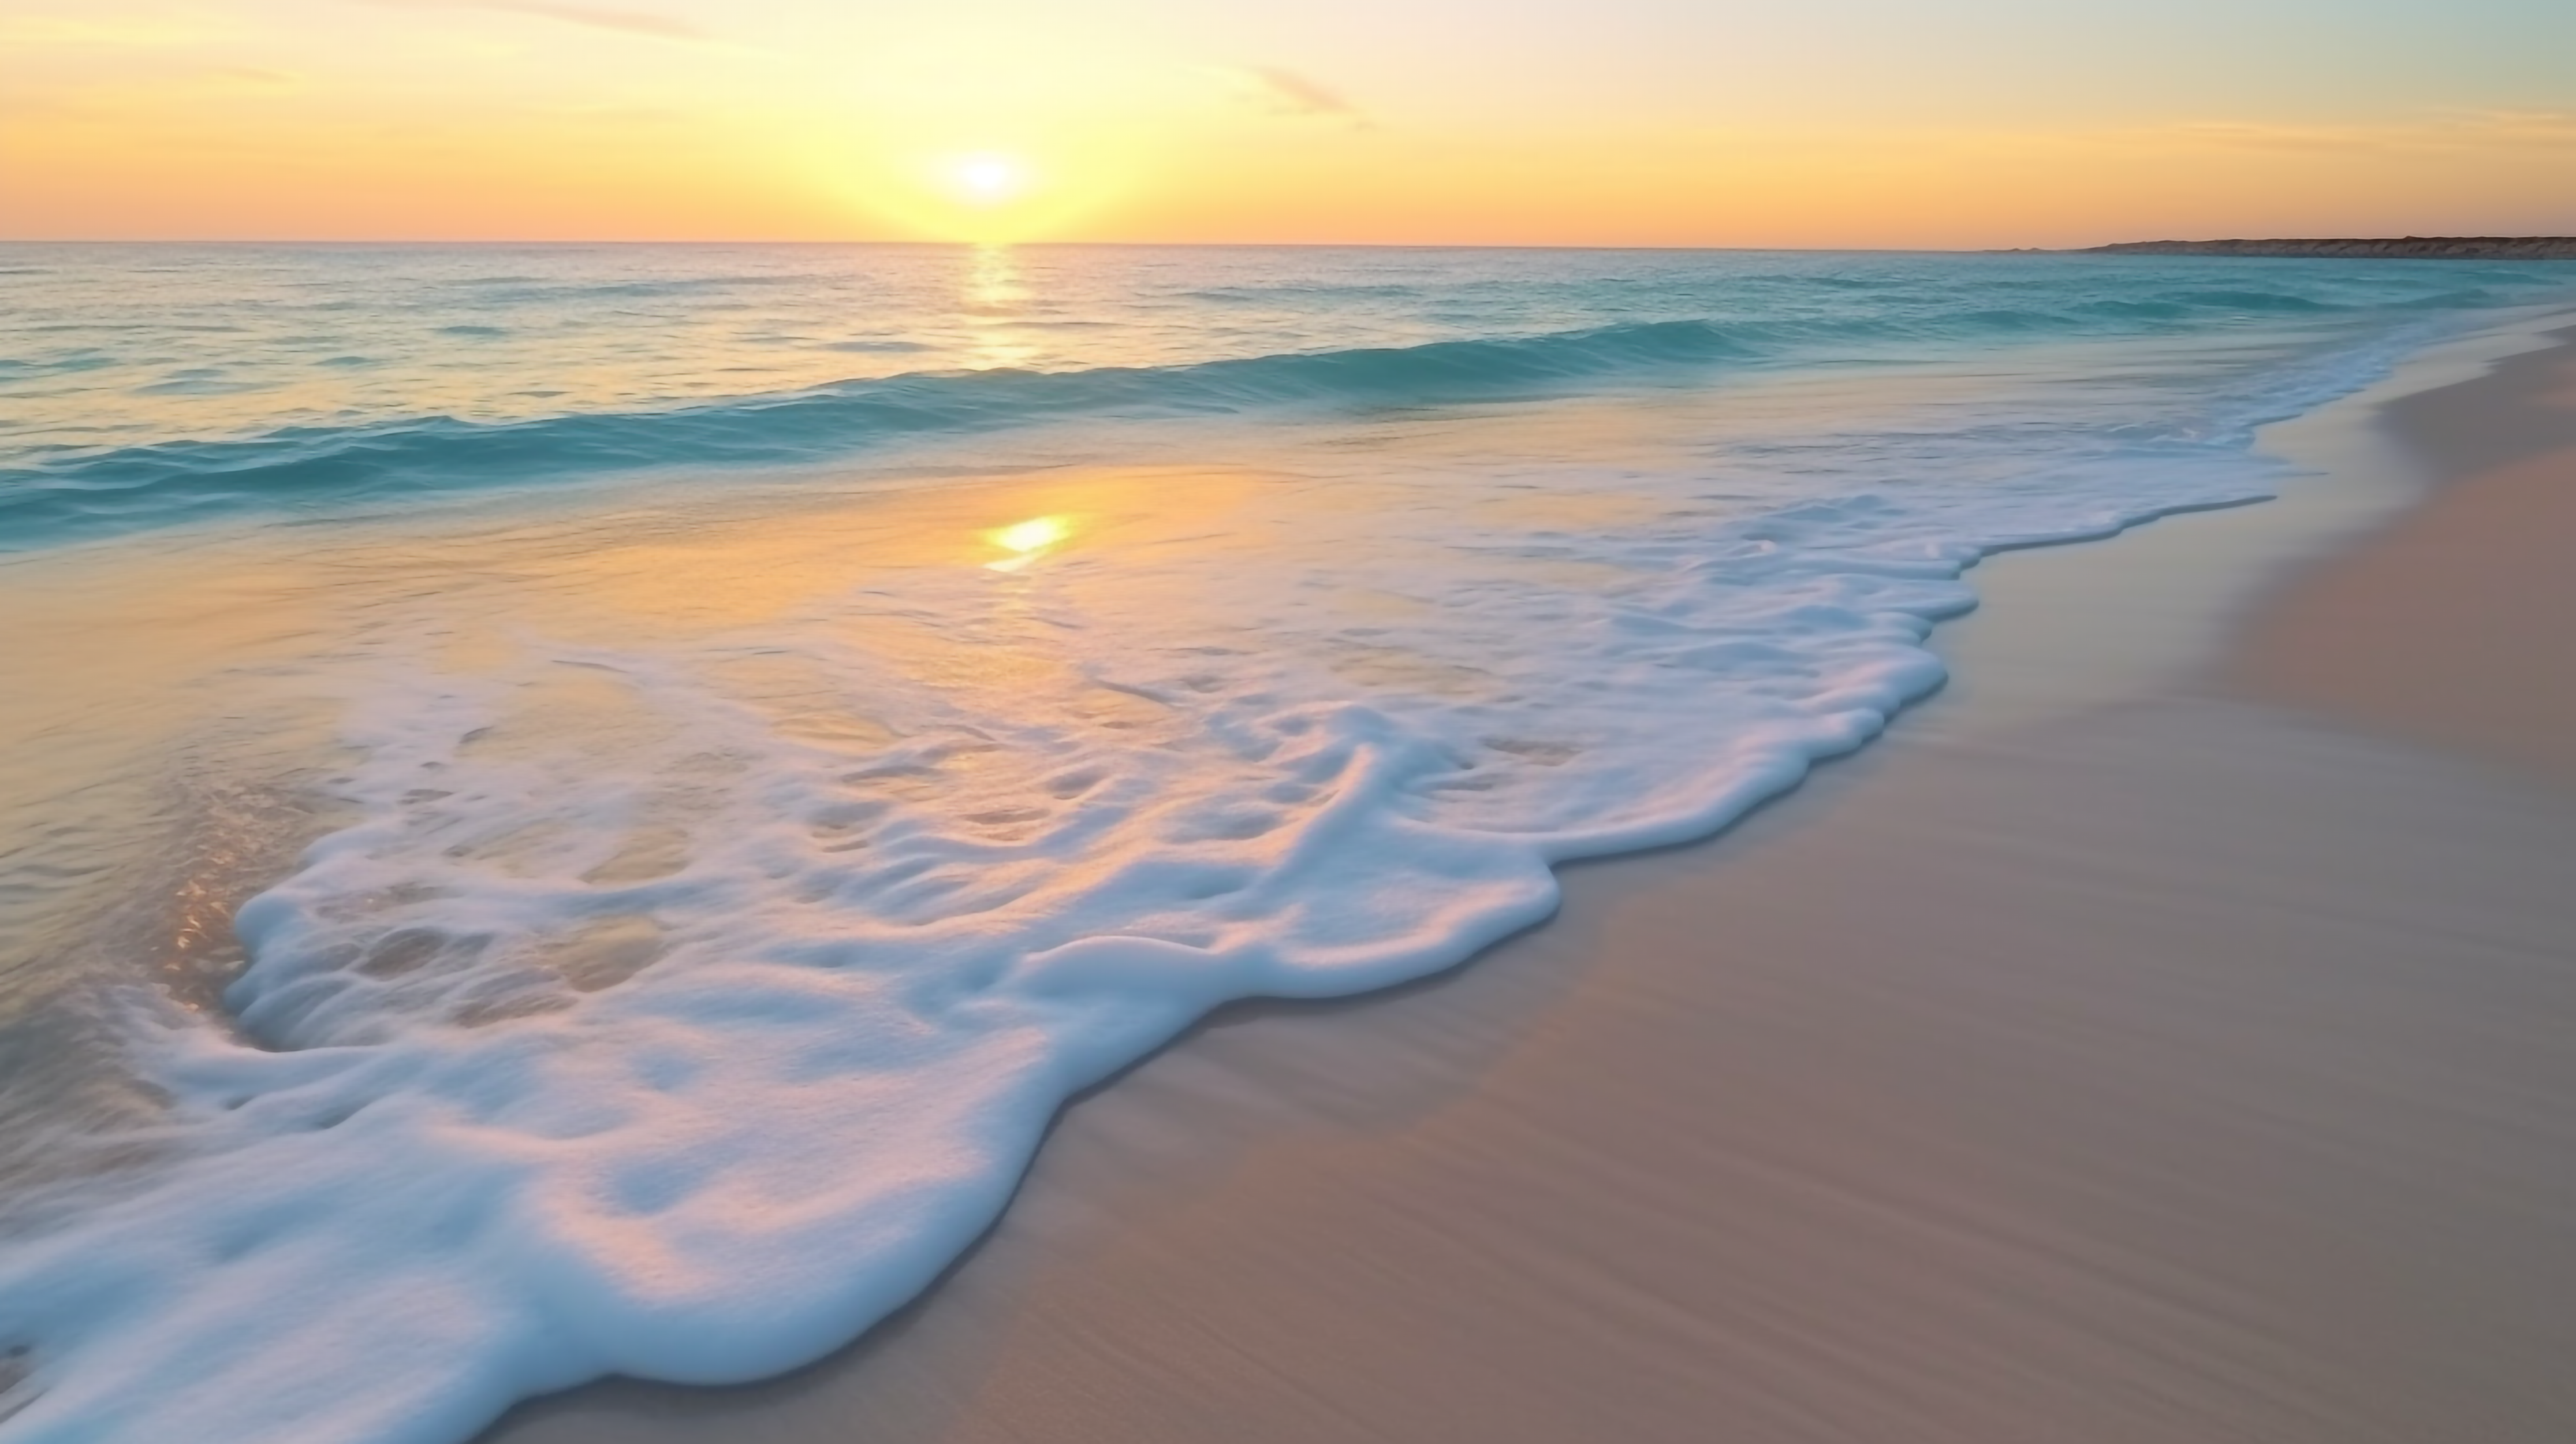 沙滩上流动的水日落天空风景图片